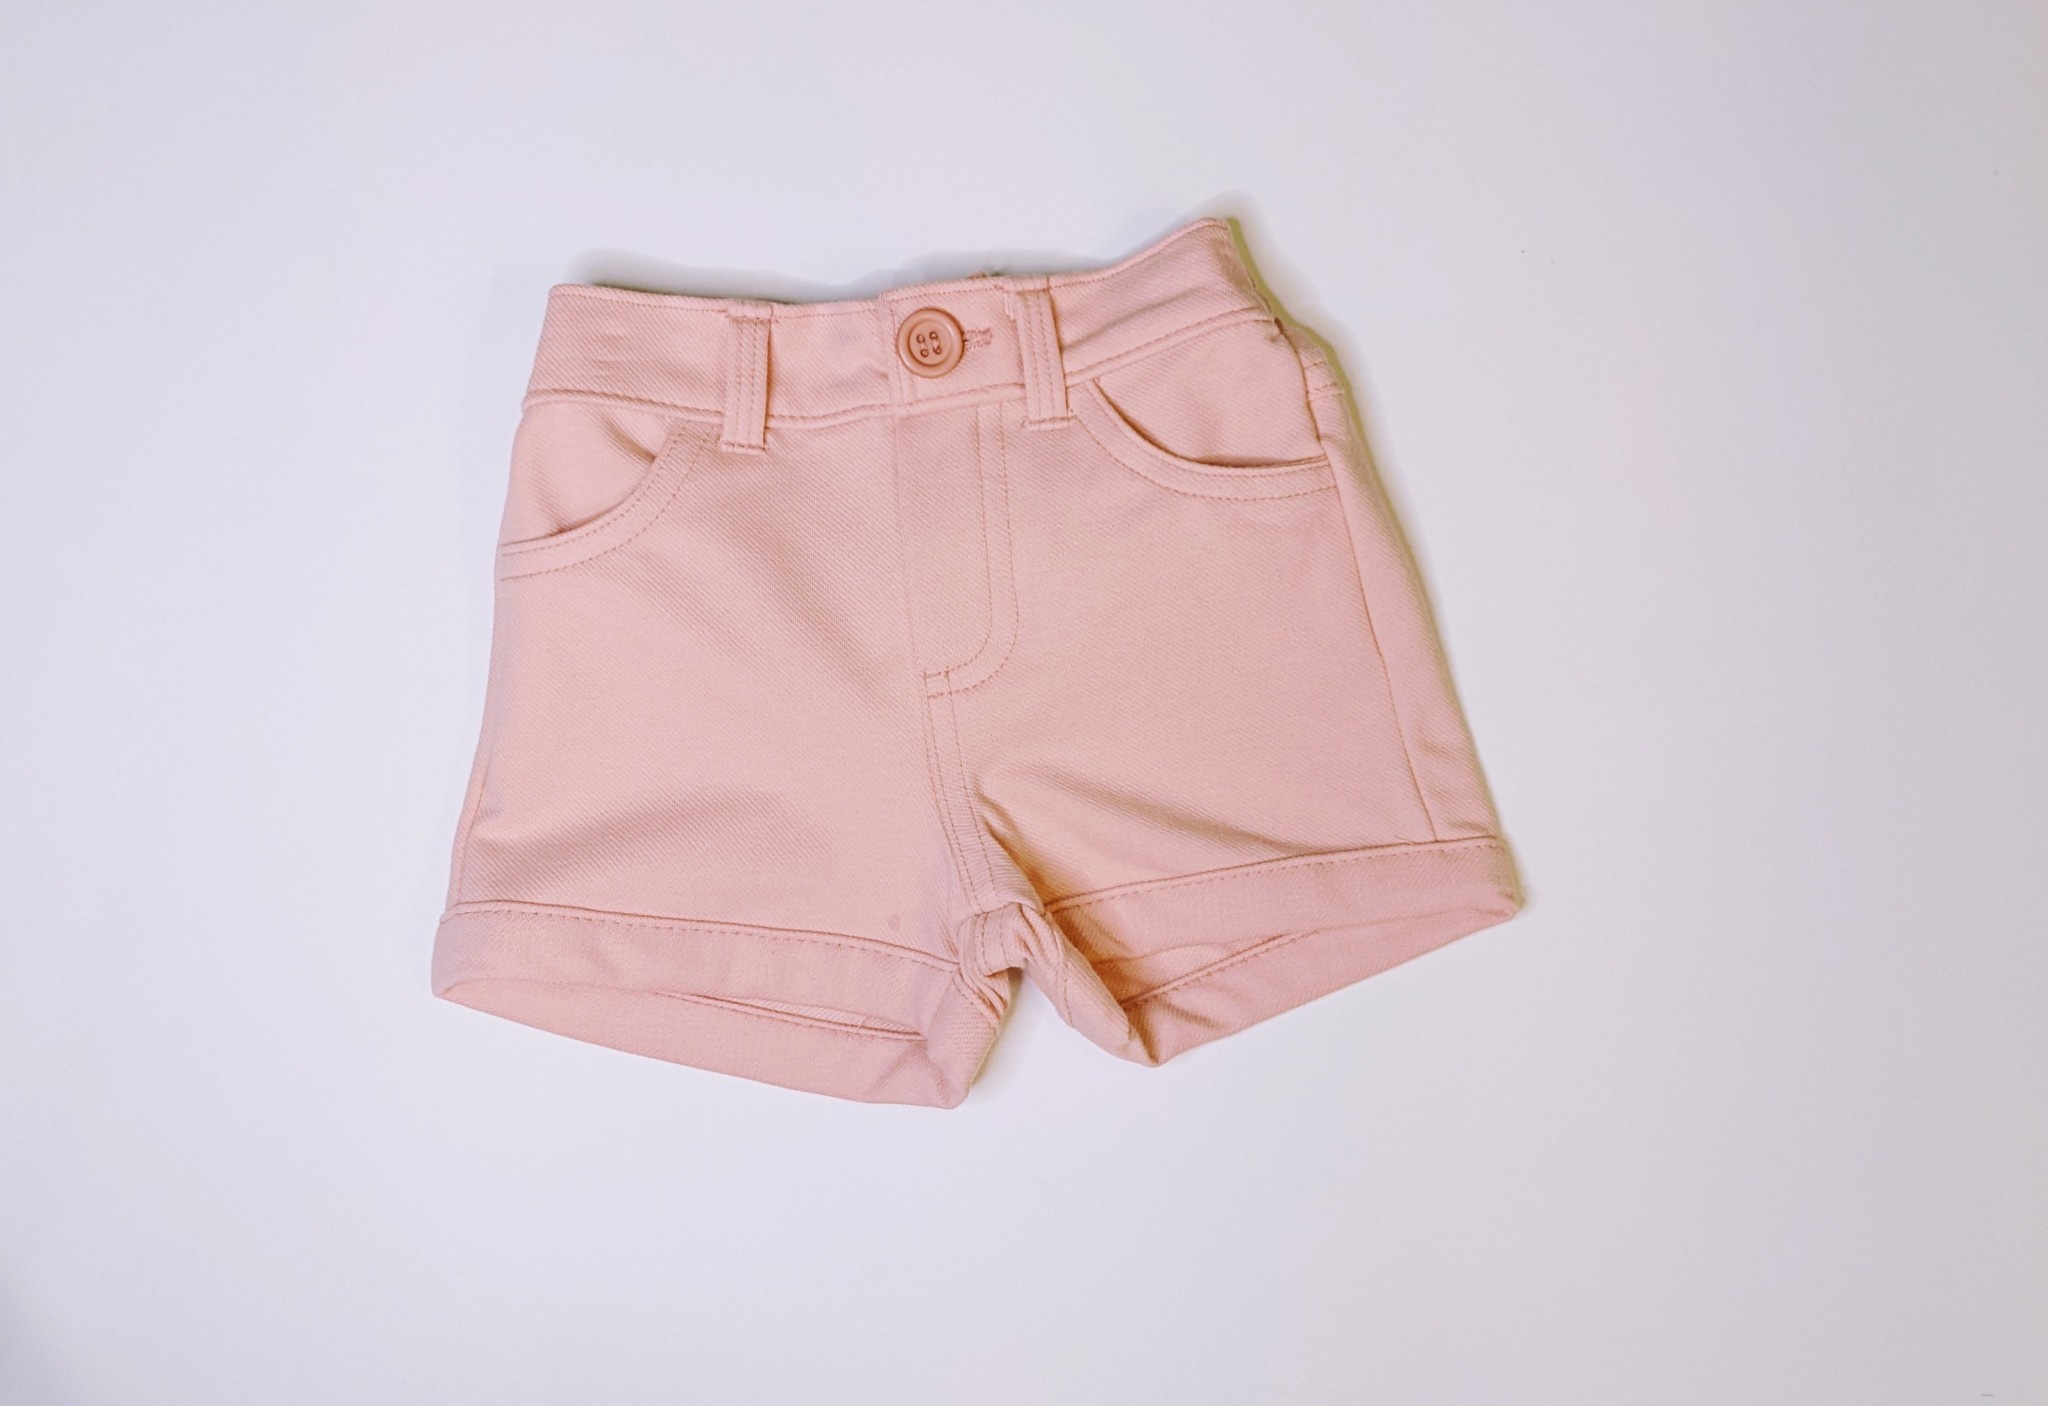 Milon Clothing Girl Hemmed Shorts